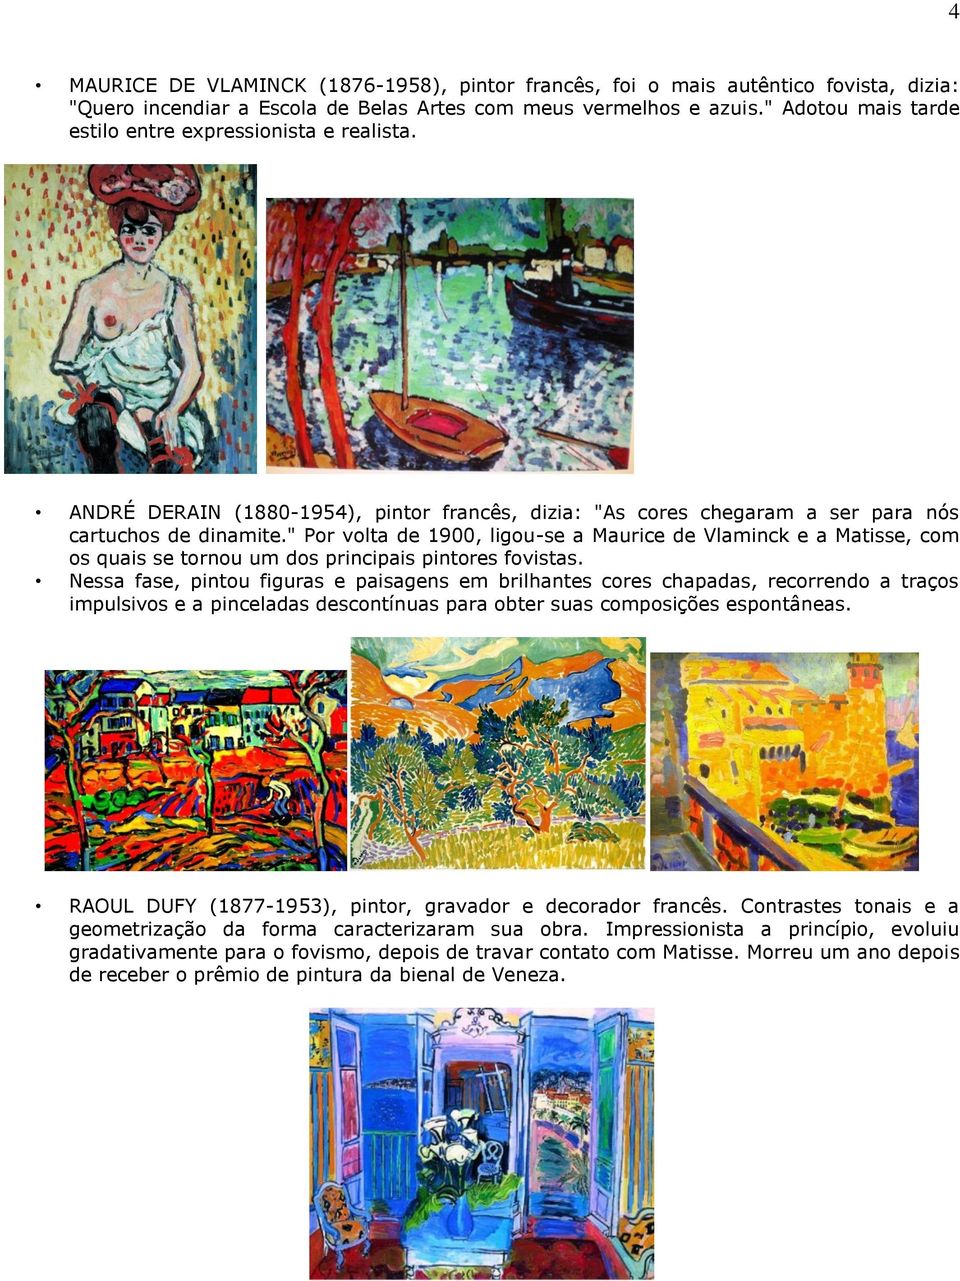 " Por volta de 1900, ligou-se a Maurice de Vlaminck e a Matisse, com os quais se tornou um dos principais pintores fovistas.